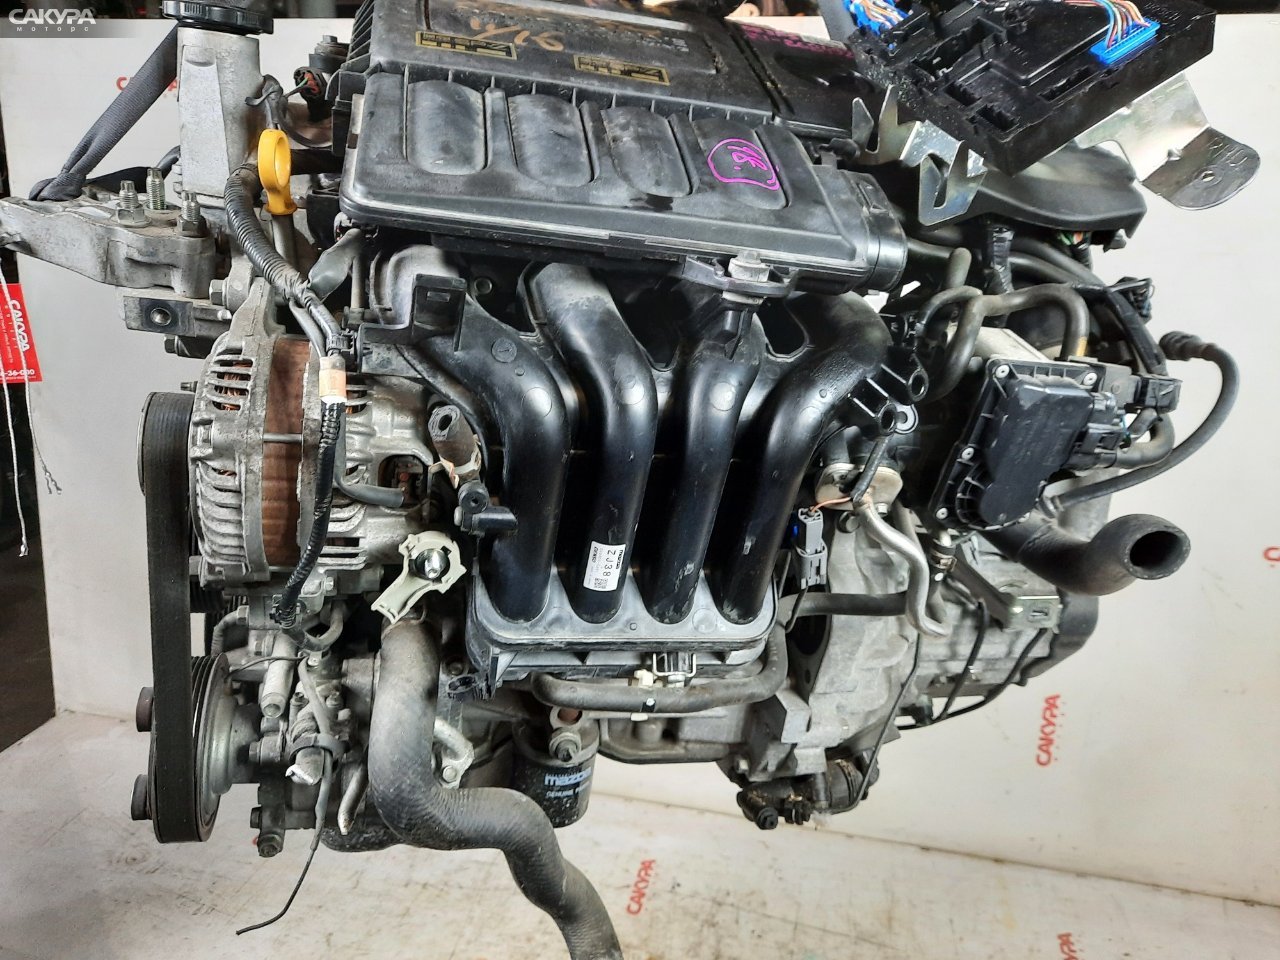 Двигатель Mazda Demio DE3FS ZJ-VE: купить в Сакура Красноярск.